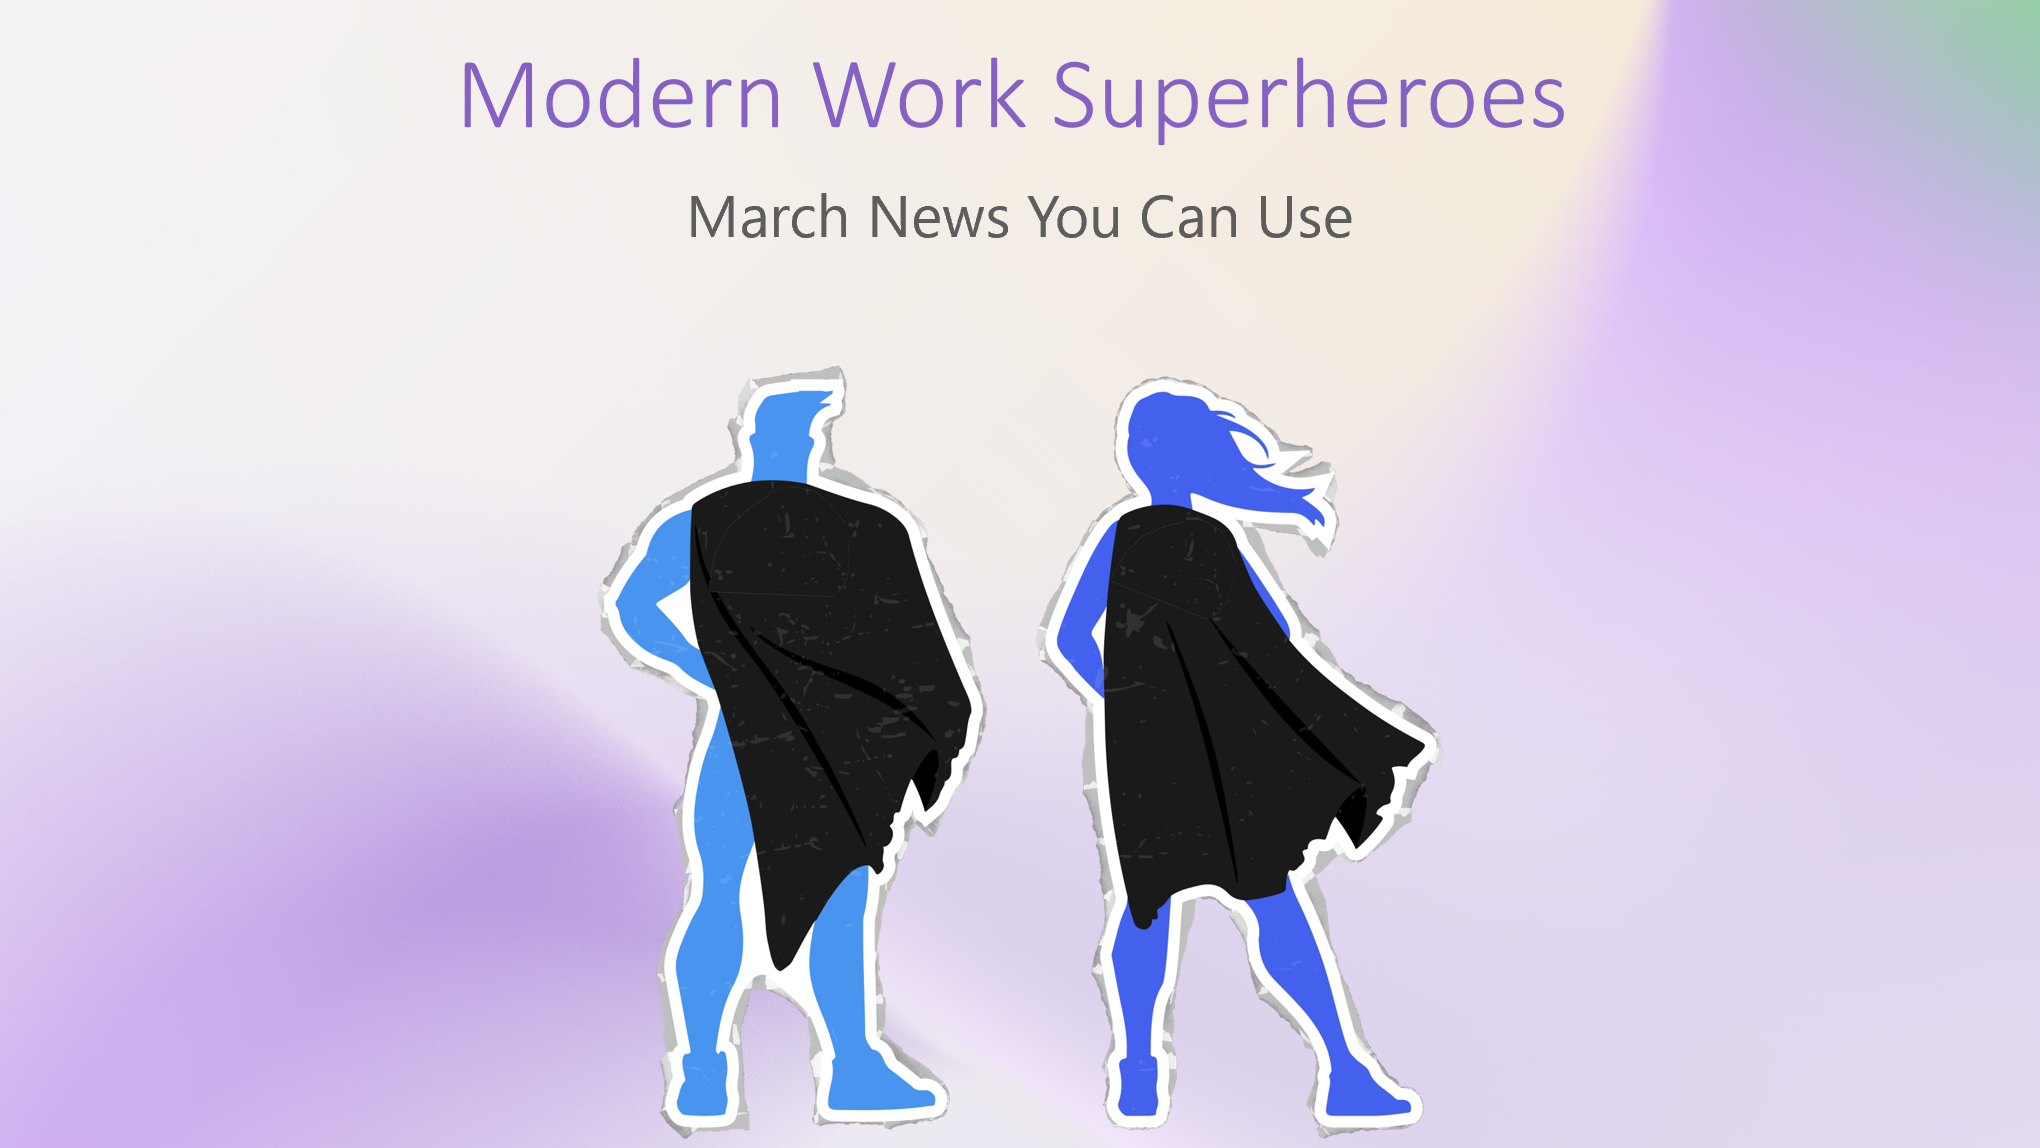 Moderne Arbeits-Superhelden |  Videos zu Teams-Apps + Neuigkeiten vom März